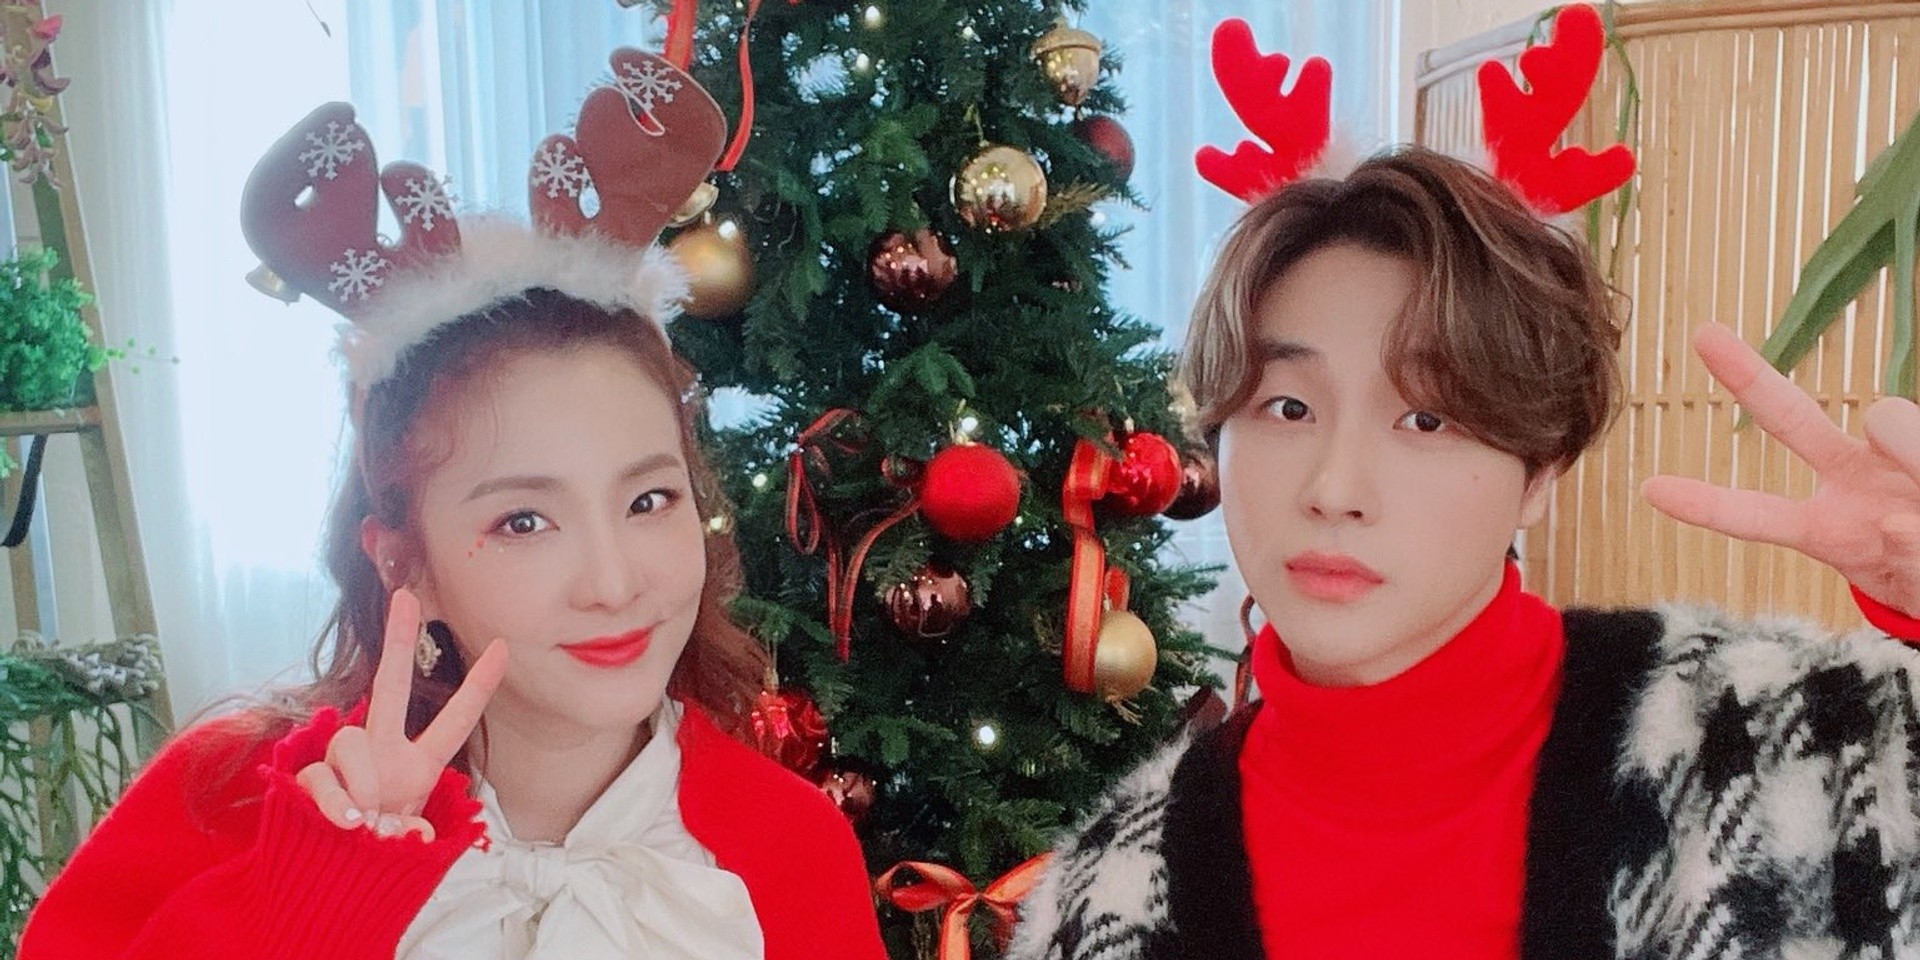 Dara and iKON's Jay cover Iñigo Pascual's 'Dahil Sa'yo' for Christmas – watch